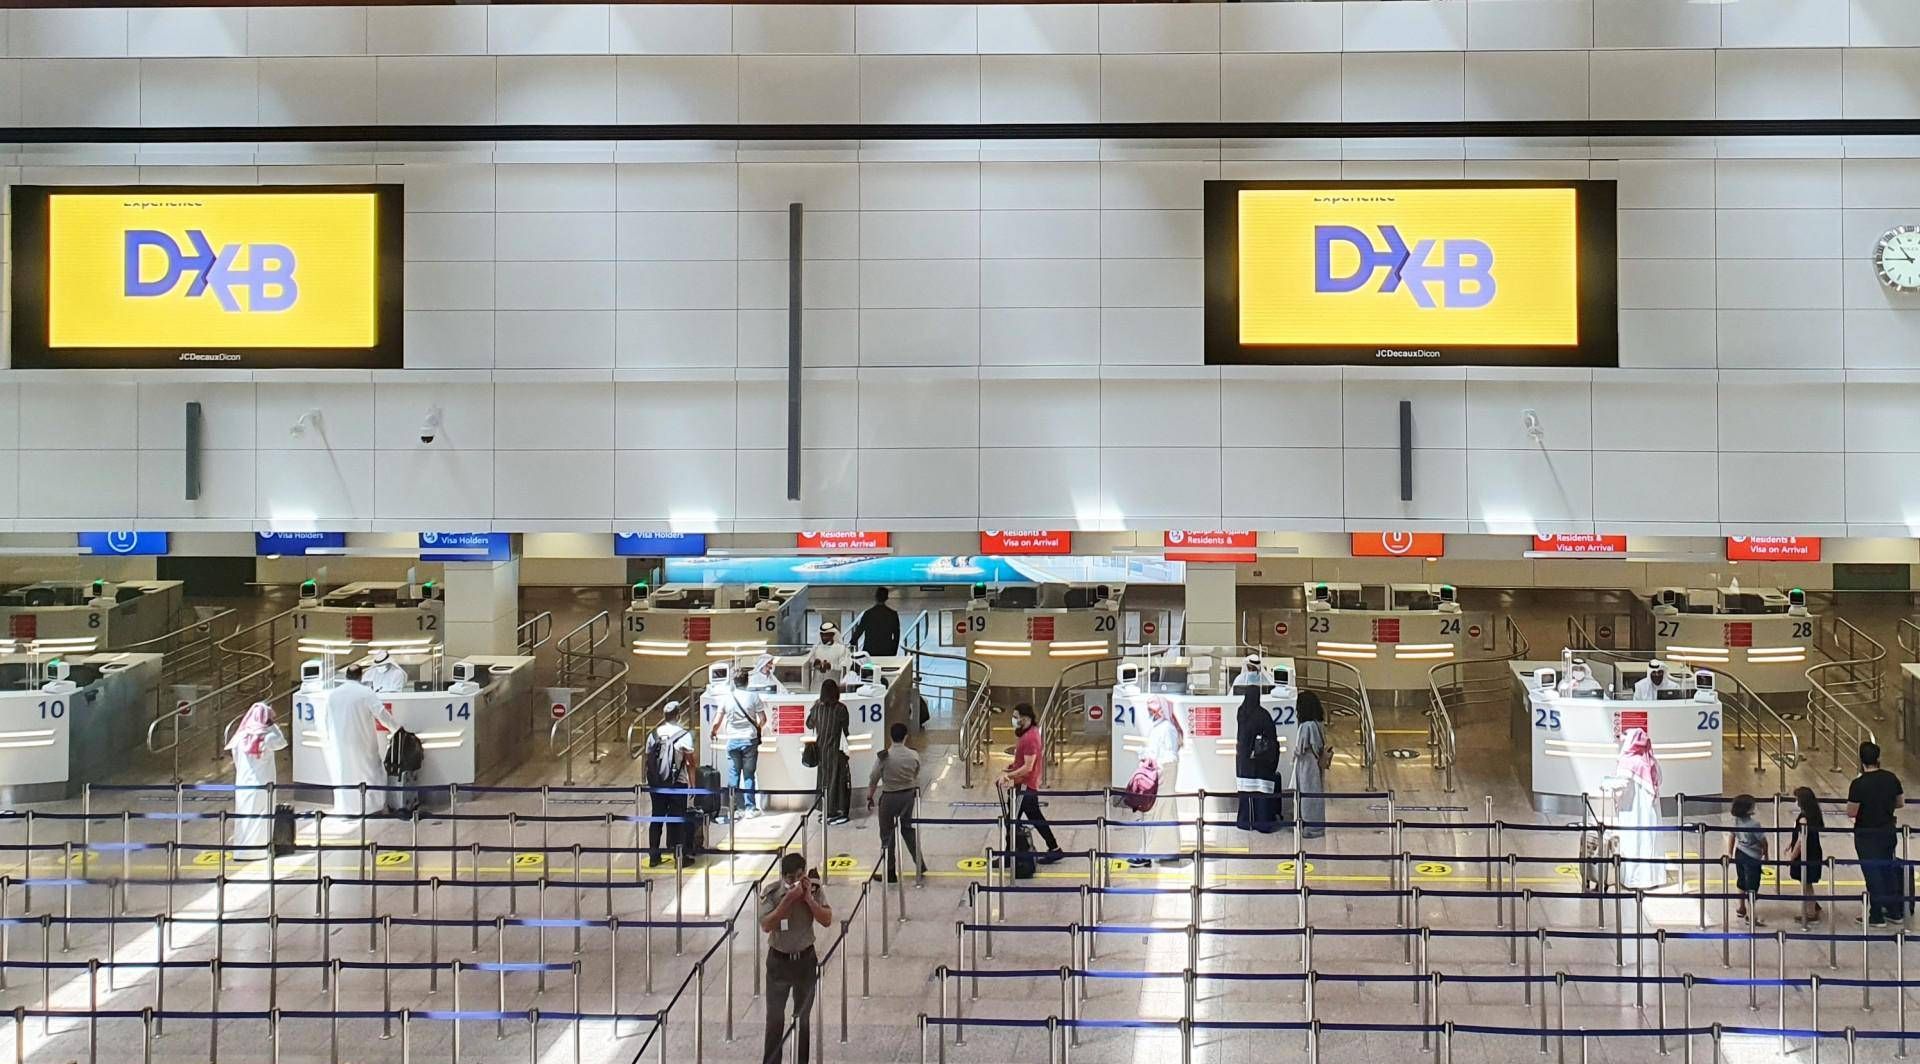 السلطات تحث المسافرين من الإمارات على الالتزام بقواعد السلامة ضد كورونا حتى لو تم تخفيفها في الخارج